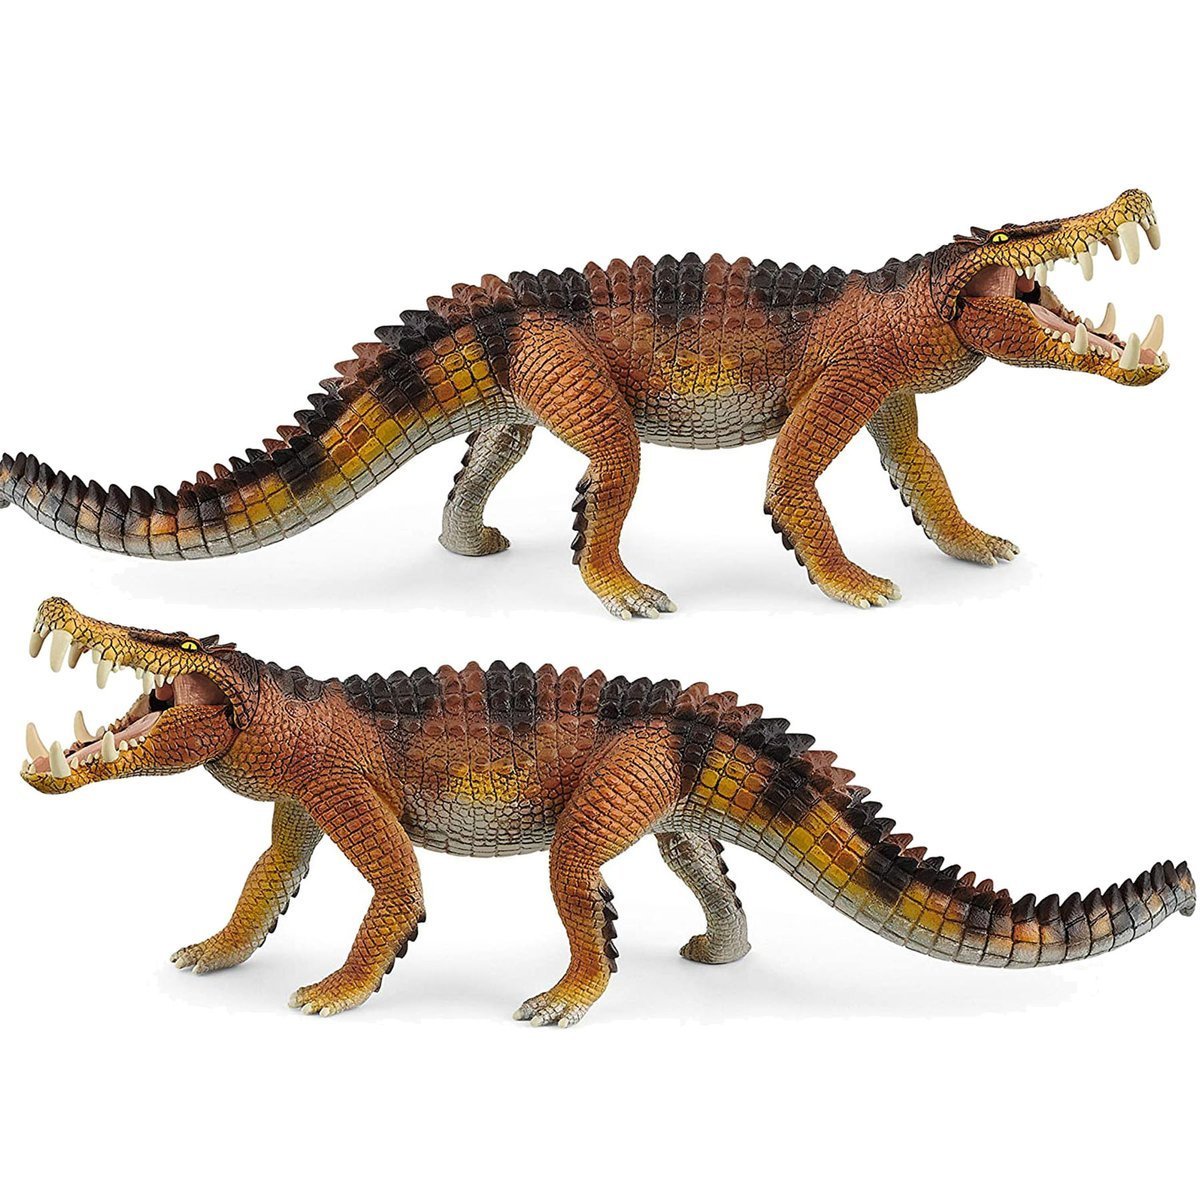 SCHLEICH Dinozaur Kaprosuchus